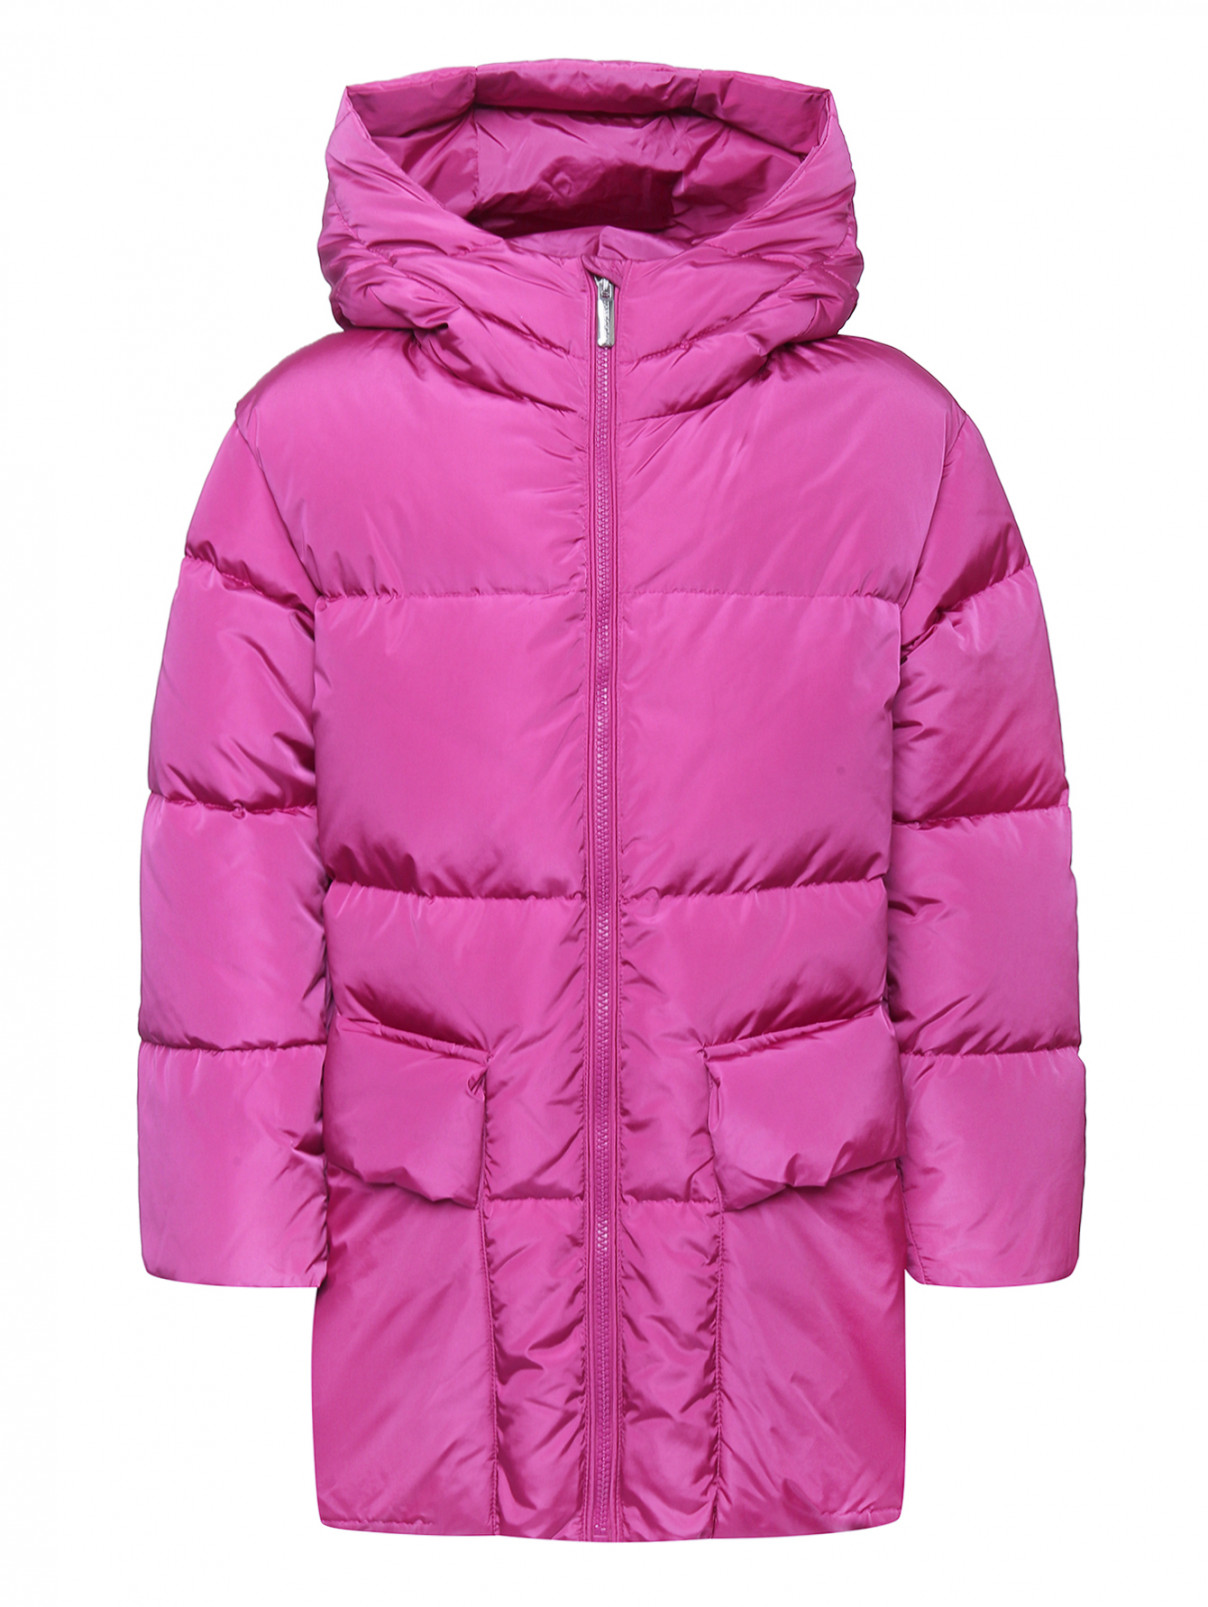 Пуховая куртка с капюшоном Freedomday  –  Общий вид  – Цвет:  Розовый